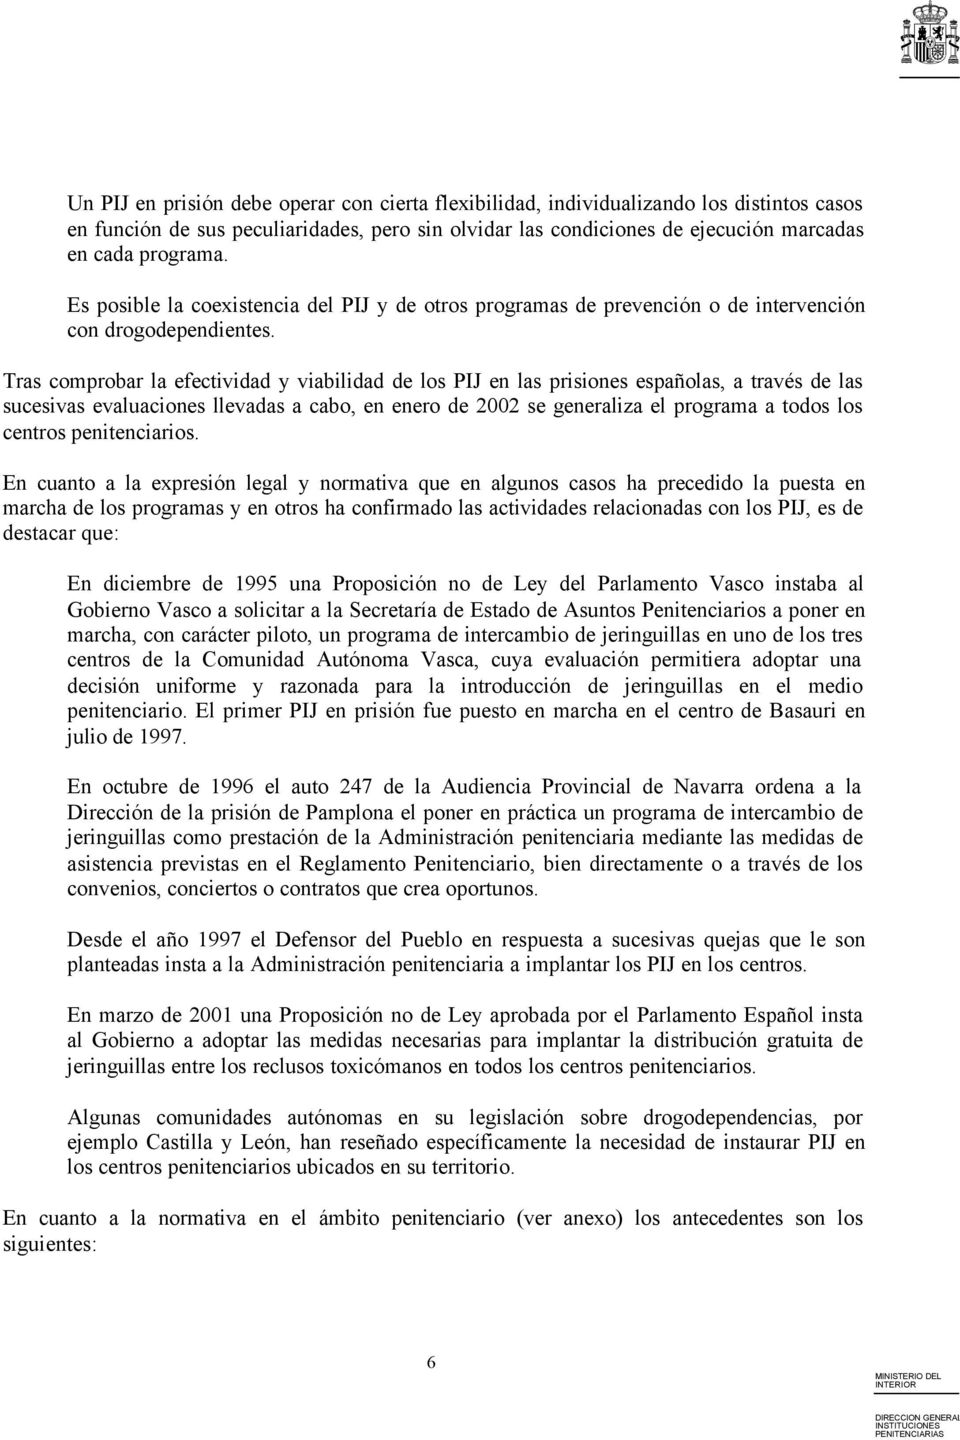 Tras comprobar la efectividad y viabilidad de los PIJ en las prisiones españolas, a través de las sucesivas evaluaciones llevadas a cabo, en enero de 2002 se generaliza el programa a todos los